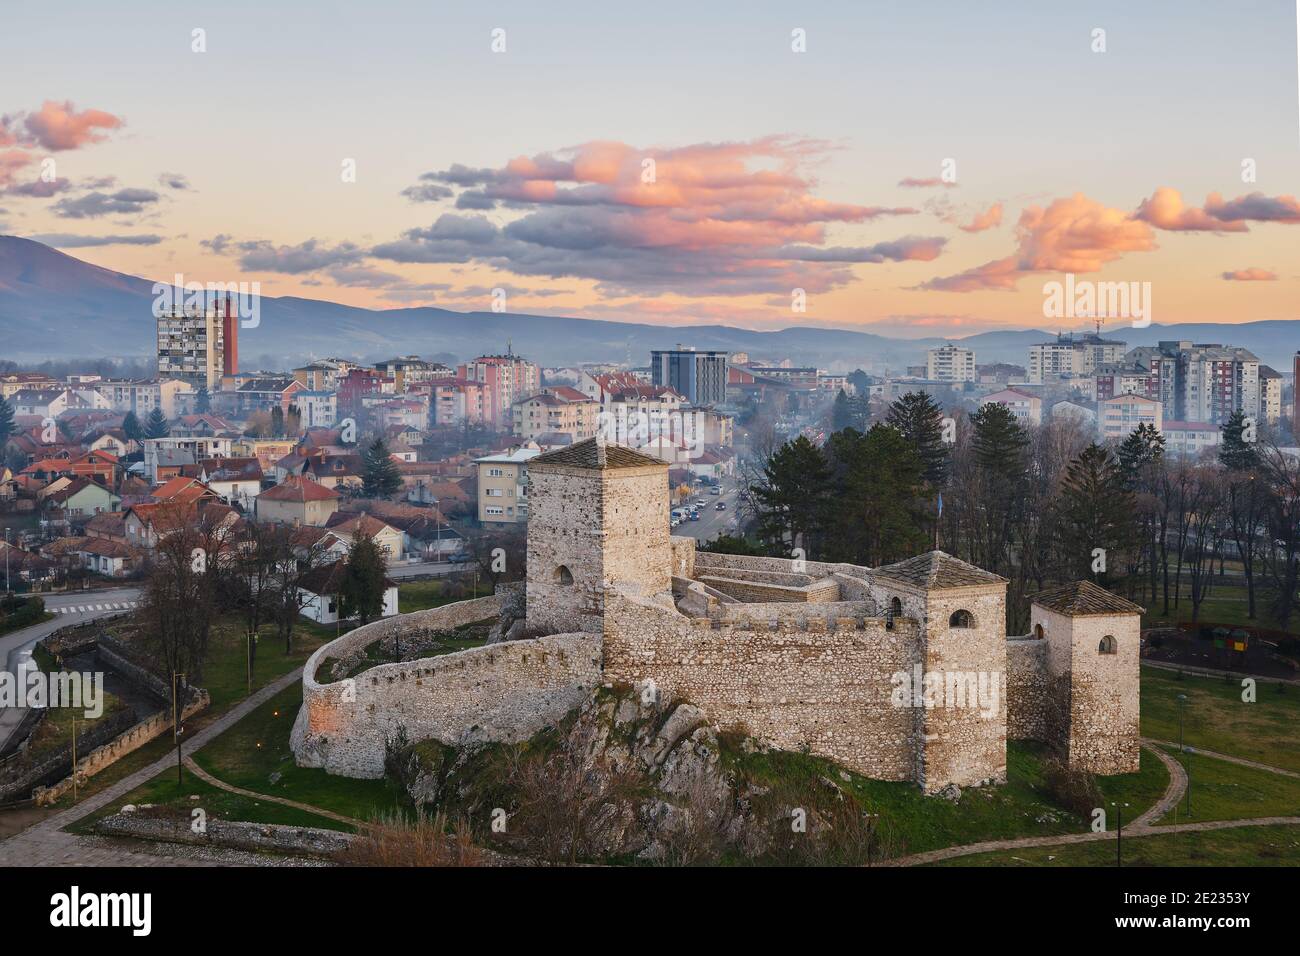 Bellissimi colori tenui delle nuvole su un cielo al tramonto sopra l'antica fortezza di fronte a un paesaggio panoramico, mistico e sognante di Pirot, Serbia Foto Stock